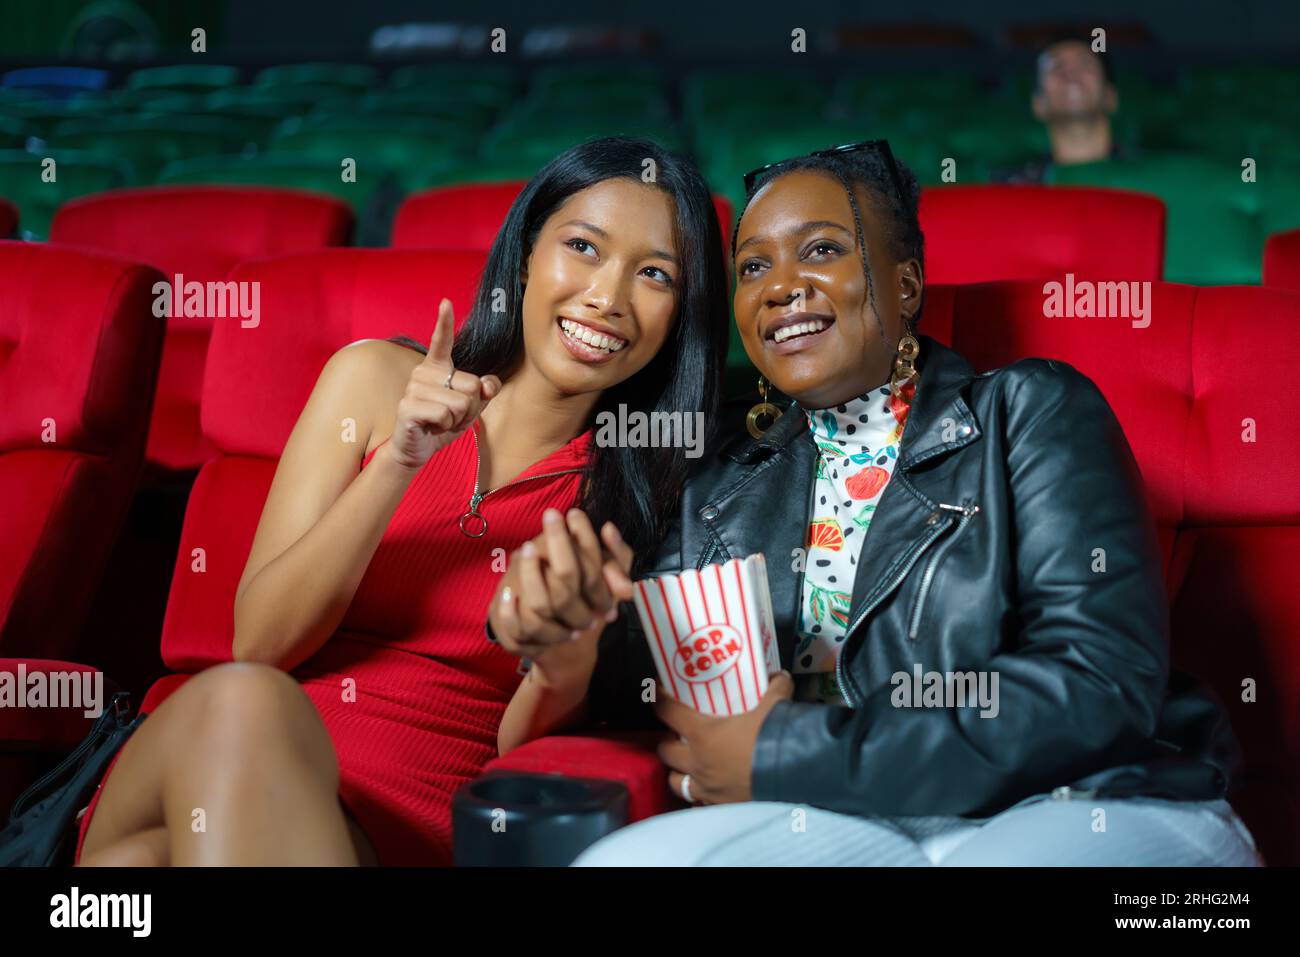 Le lesbiche gioiose condividono un sorriso mentre guardano un film al cinema, godendosi un'esperienza cinematografica coinvolgente e inclusiva insieme. Foto Stock